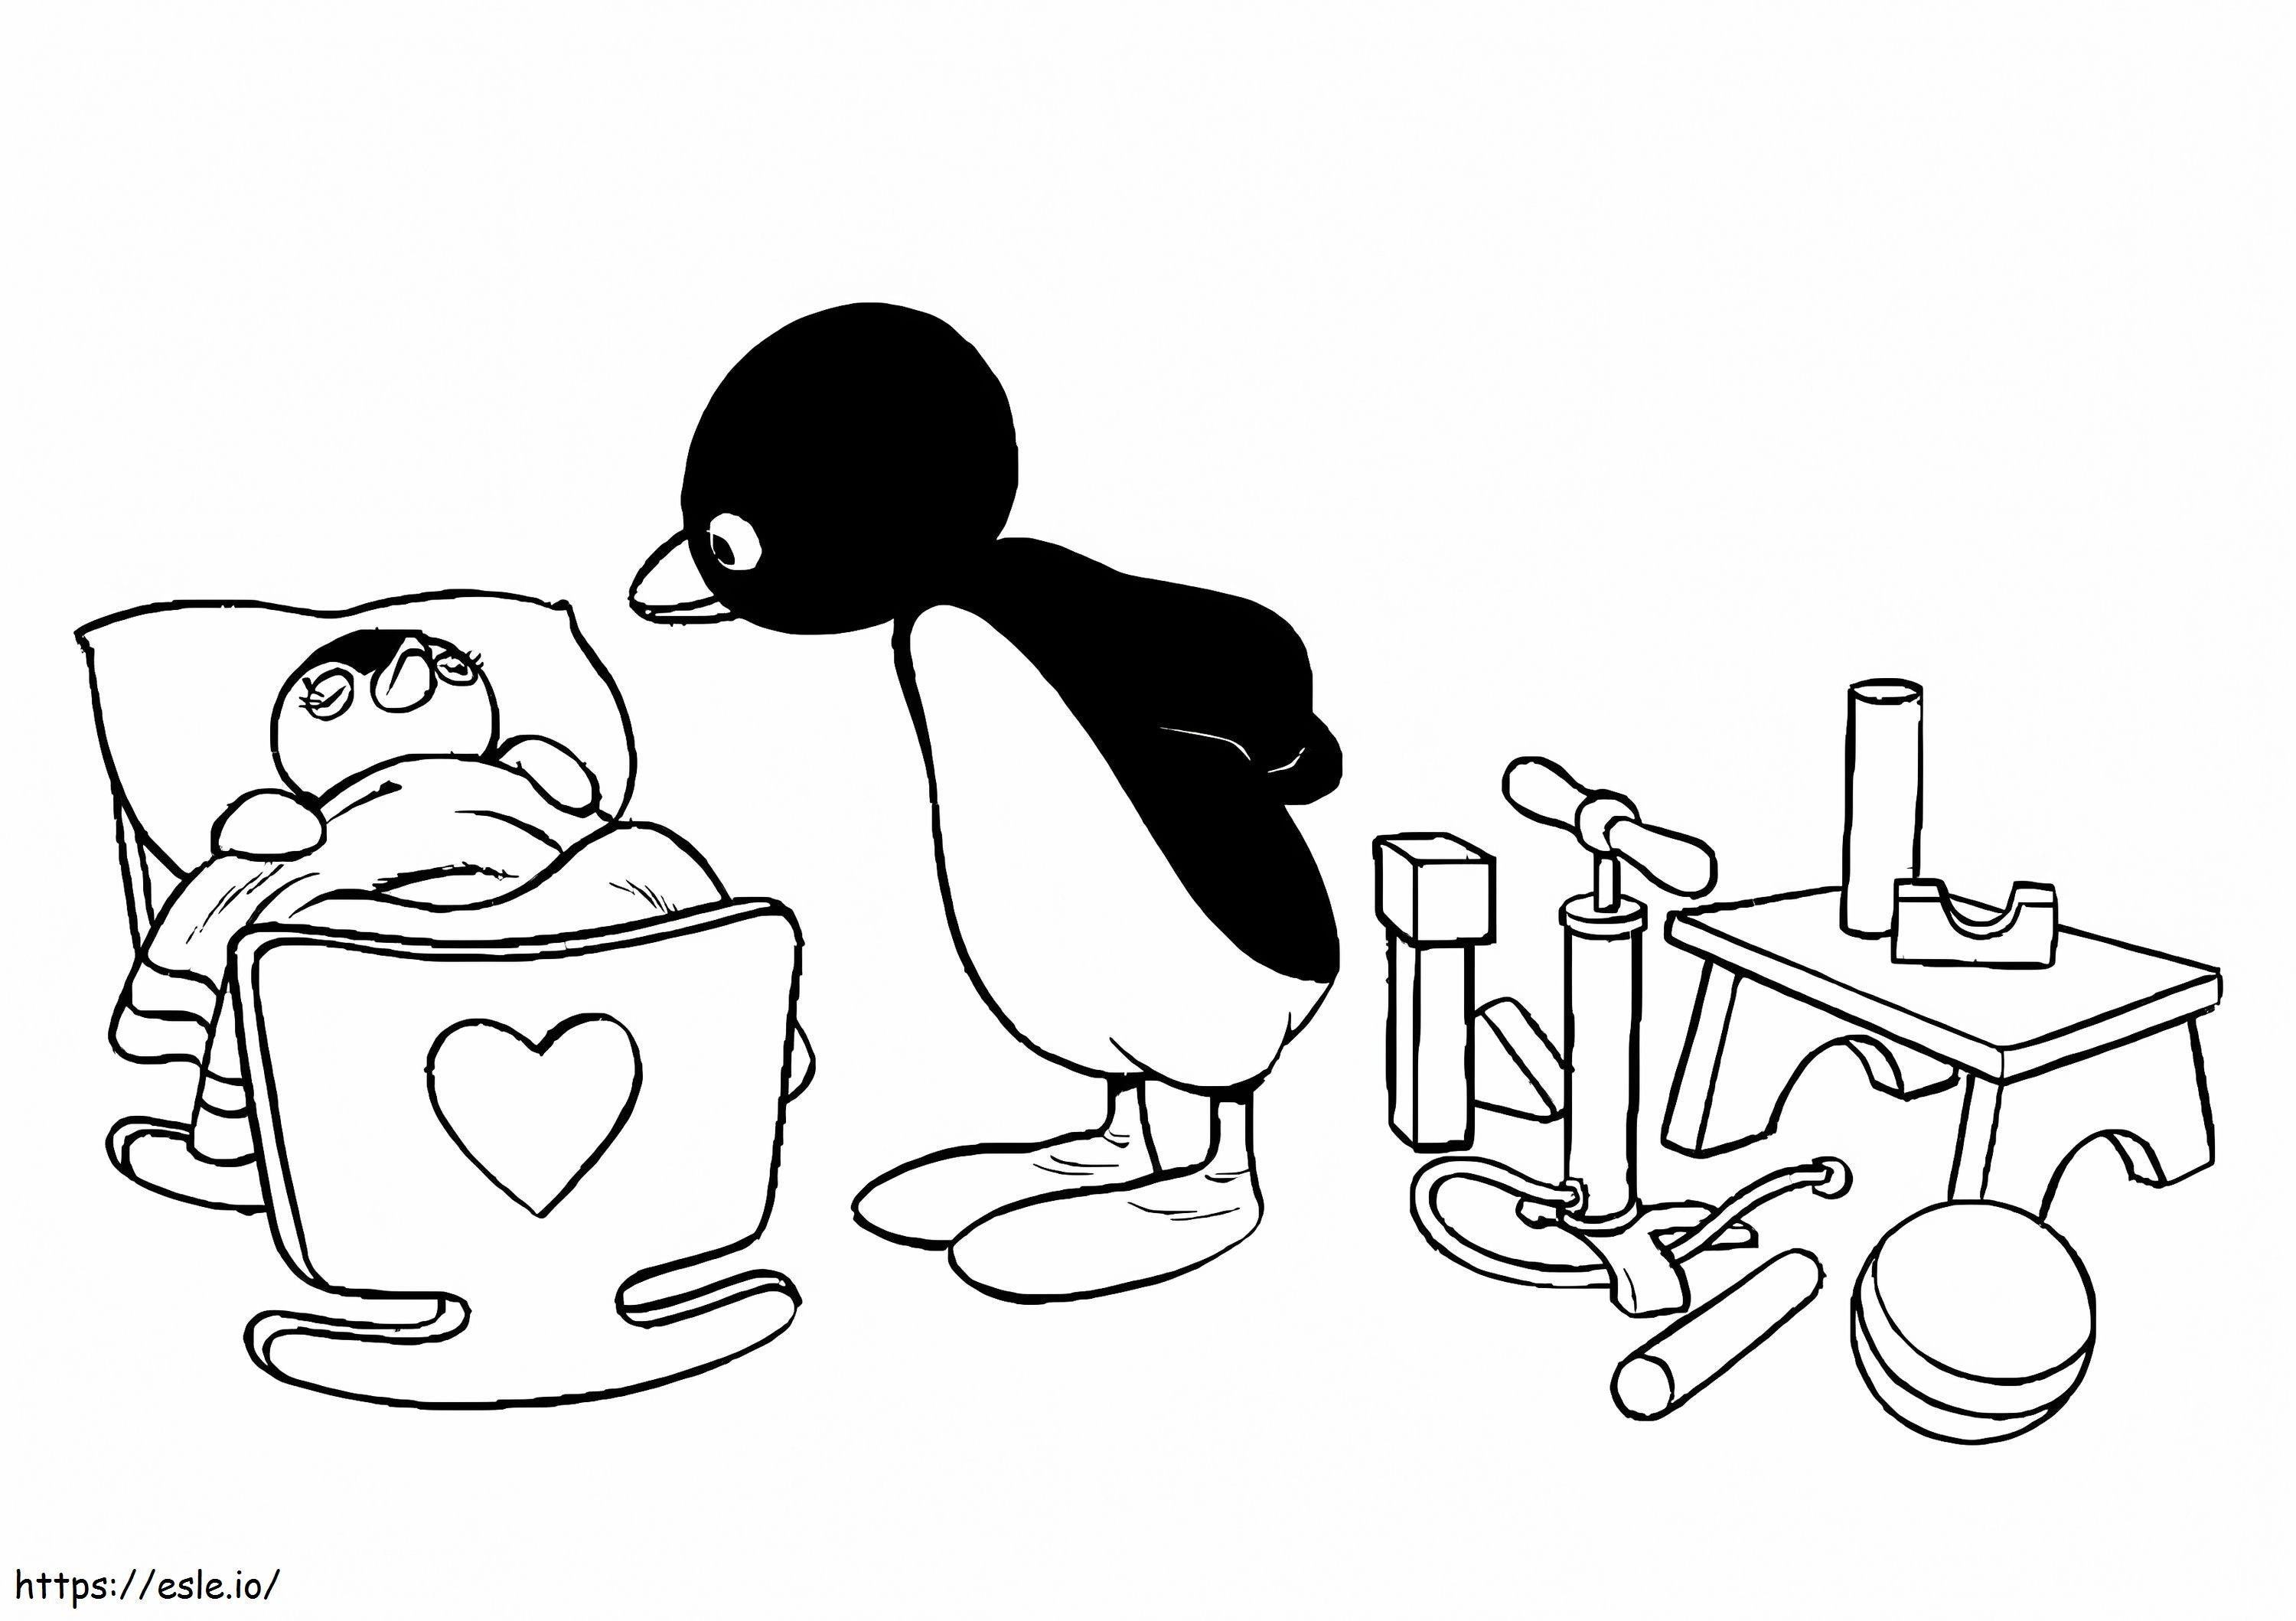 Pingu drucken ausmalbilder